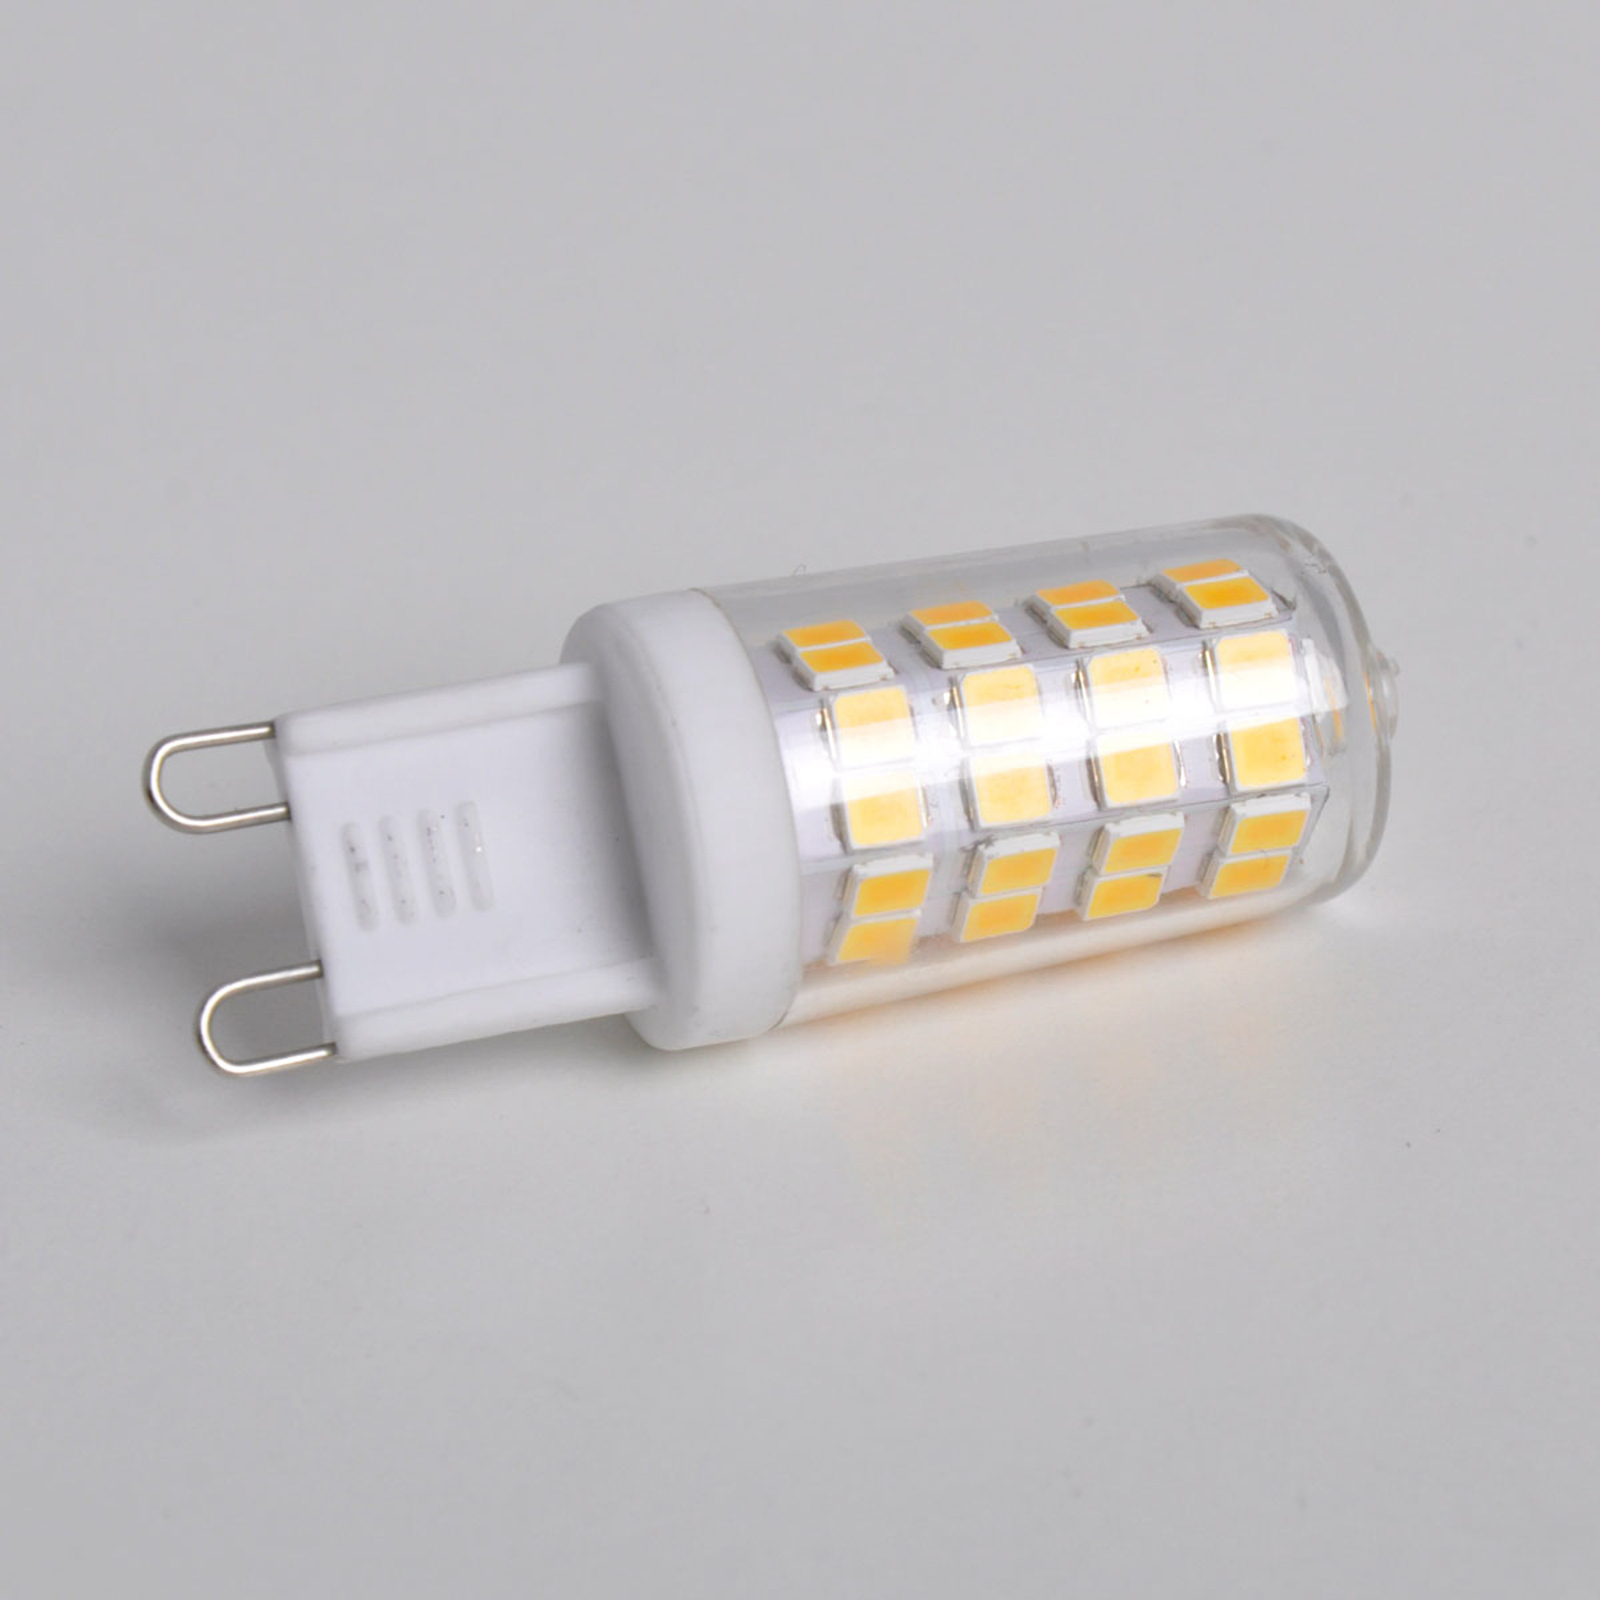 LED-stiftpære G9 3W, varmhvit, 330 lumen, 10 stk